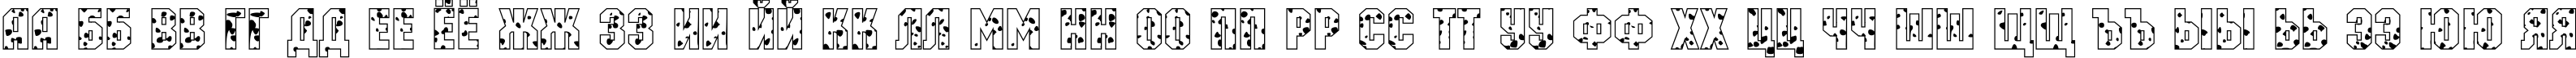 Пример написания русского алфавита шрифтом a_MachinaOrtoSpt